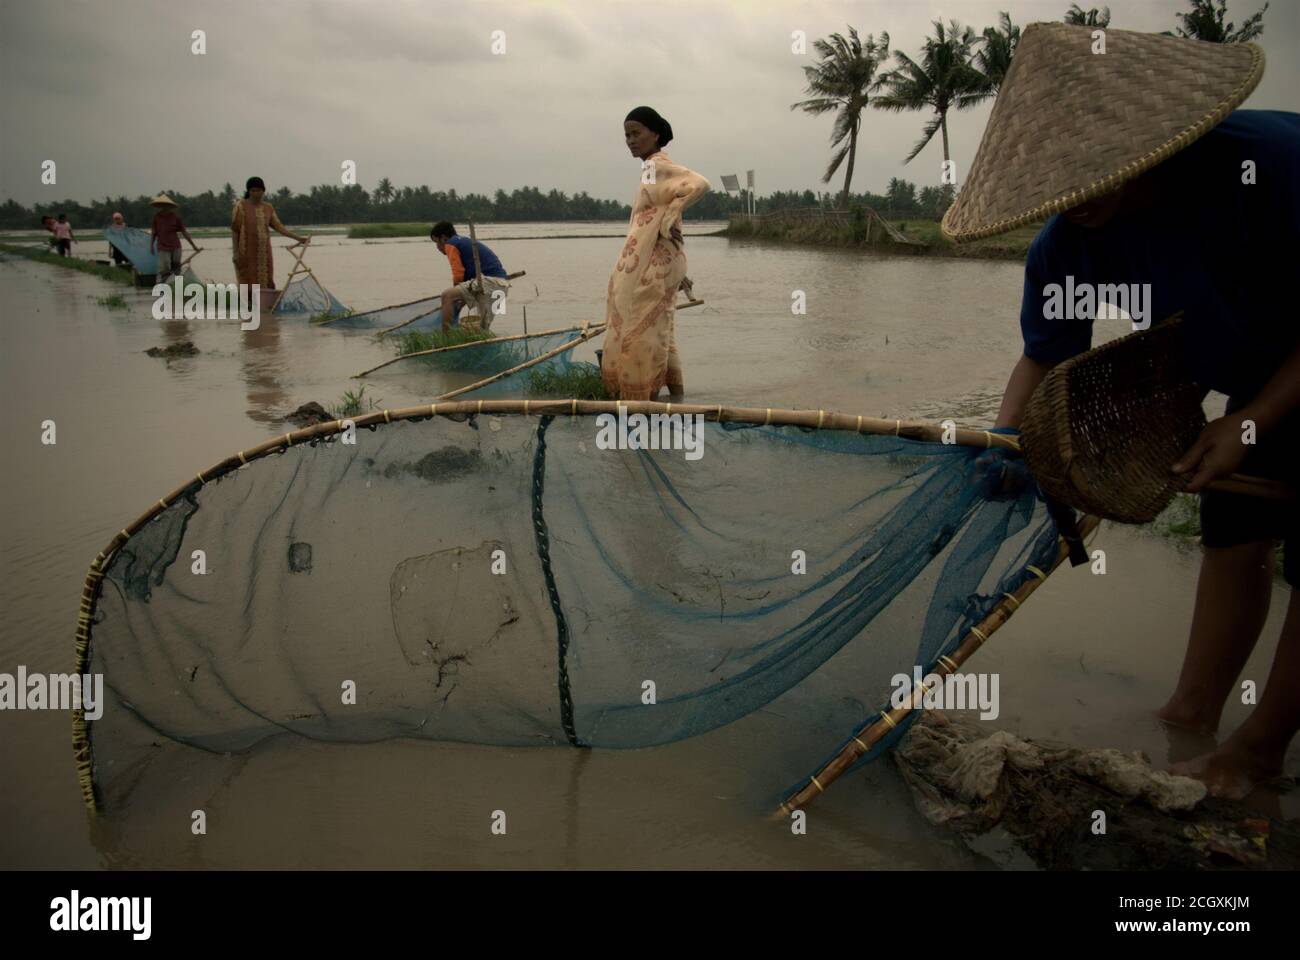 Une femme paysanne manipulant le pushnet comme elle et les autres fermiers pêchent sur un champ de riz inondé pendant la saison des pluies à Karawang regency, province de Java Ouest, Indonésie. Banque D'Images